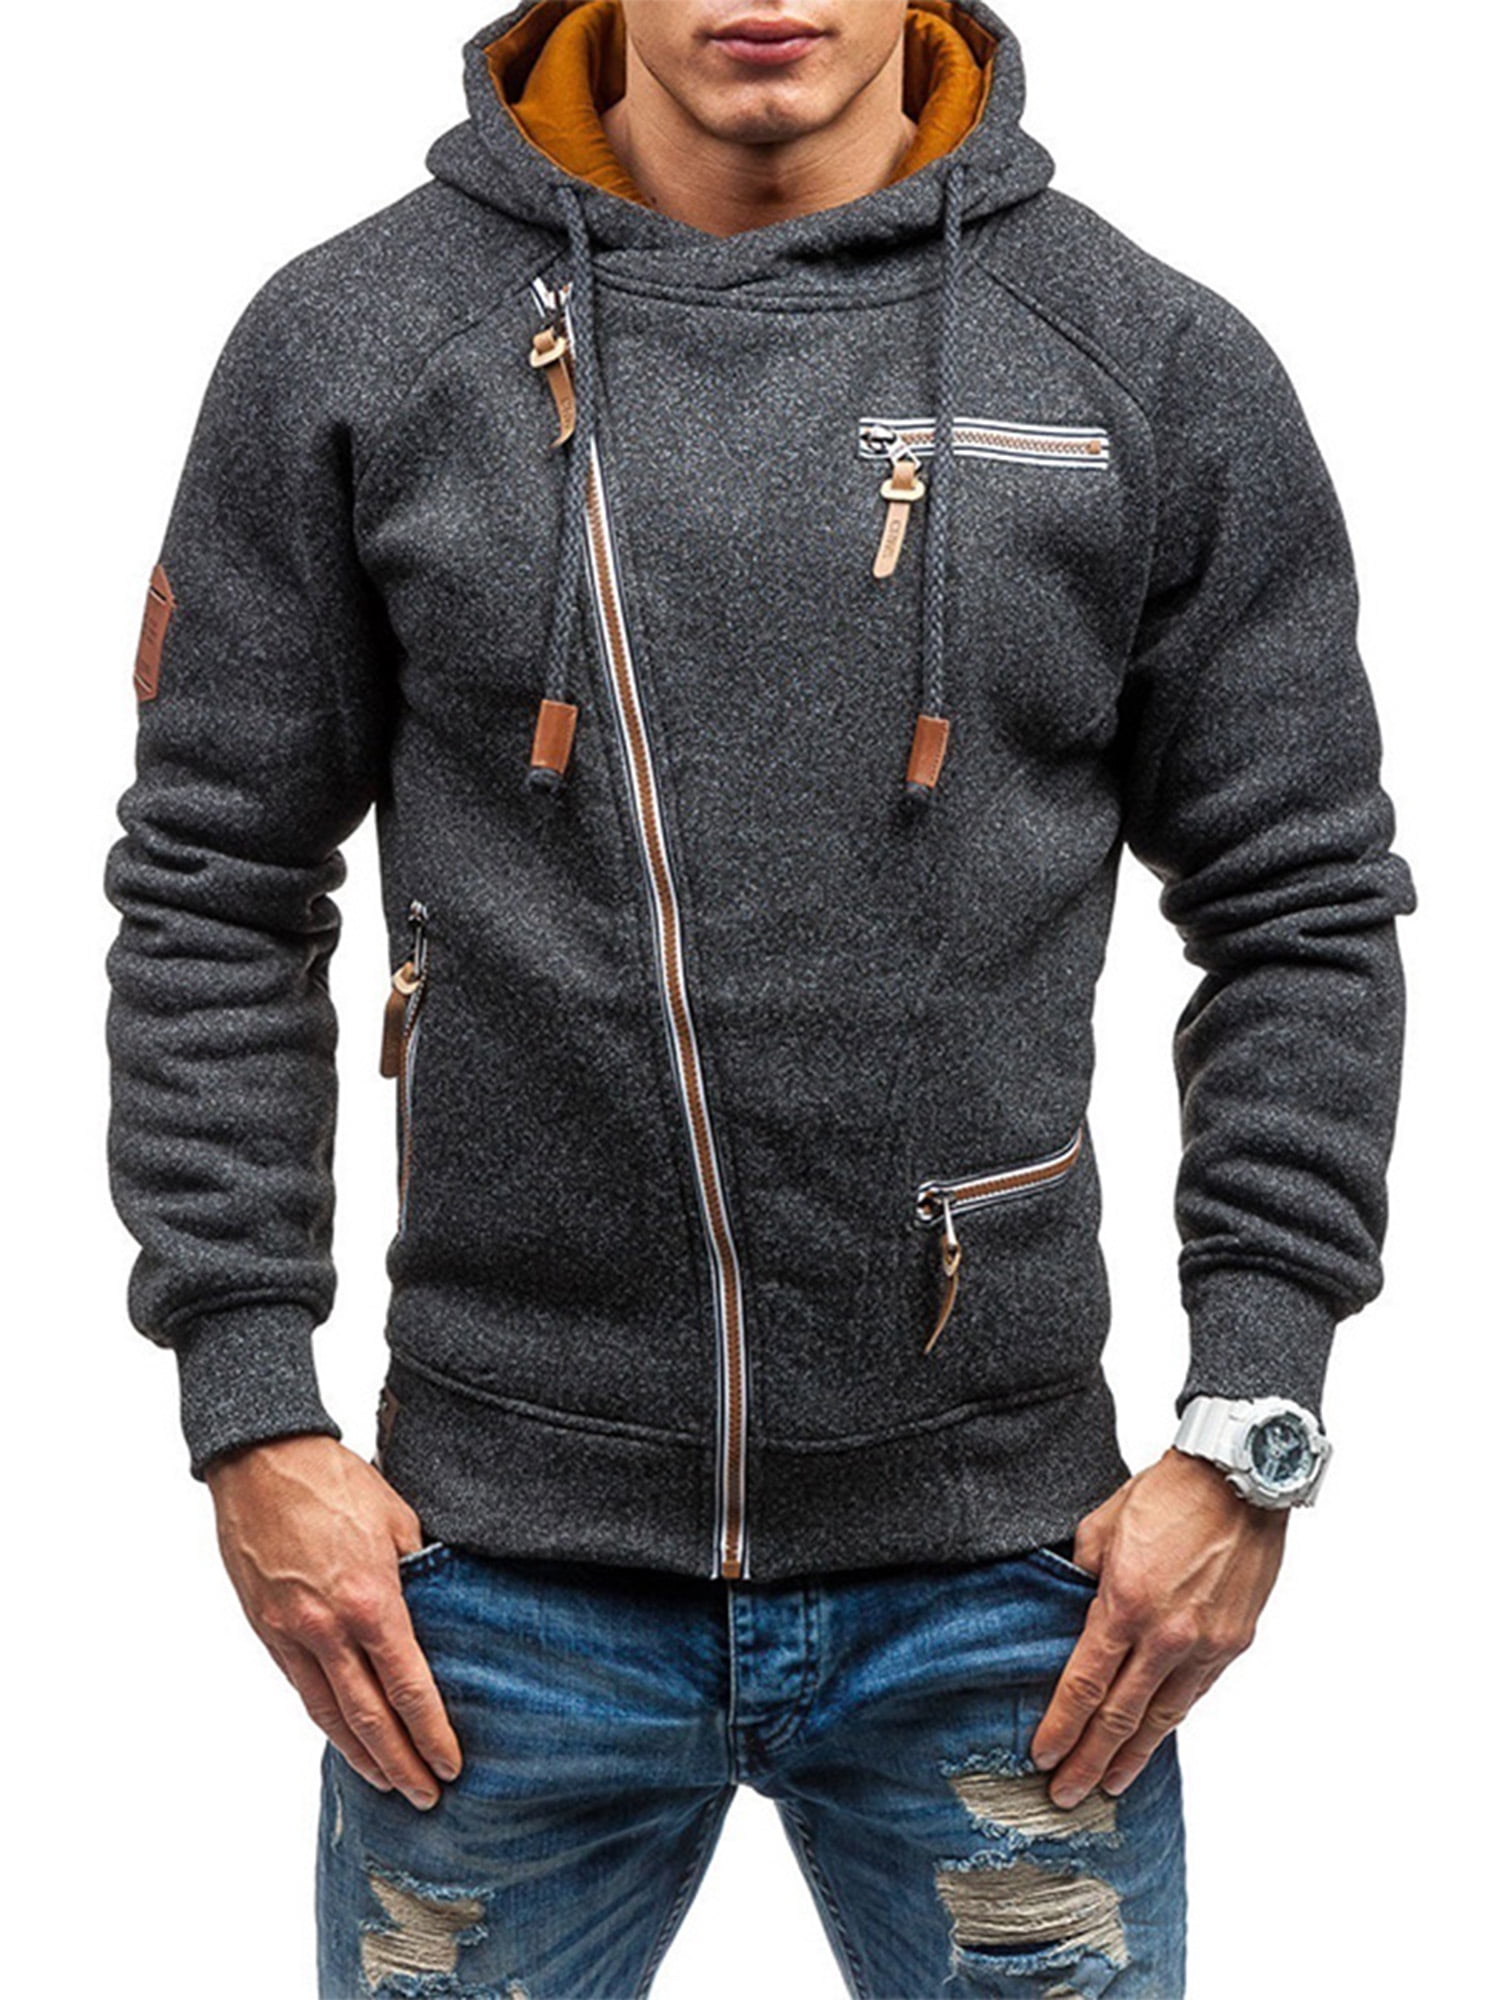 Men Long Sleeve Hoodie Hooded Sweatshirt Jumper Tops Casual Jacket Coat Outwear